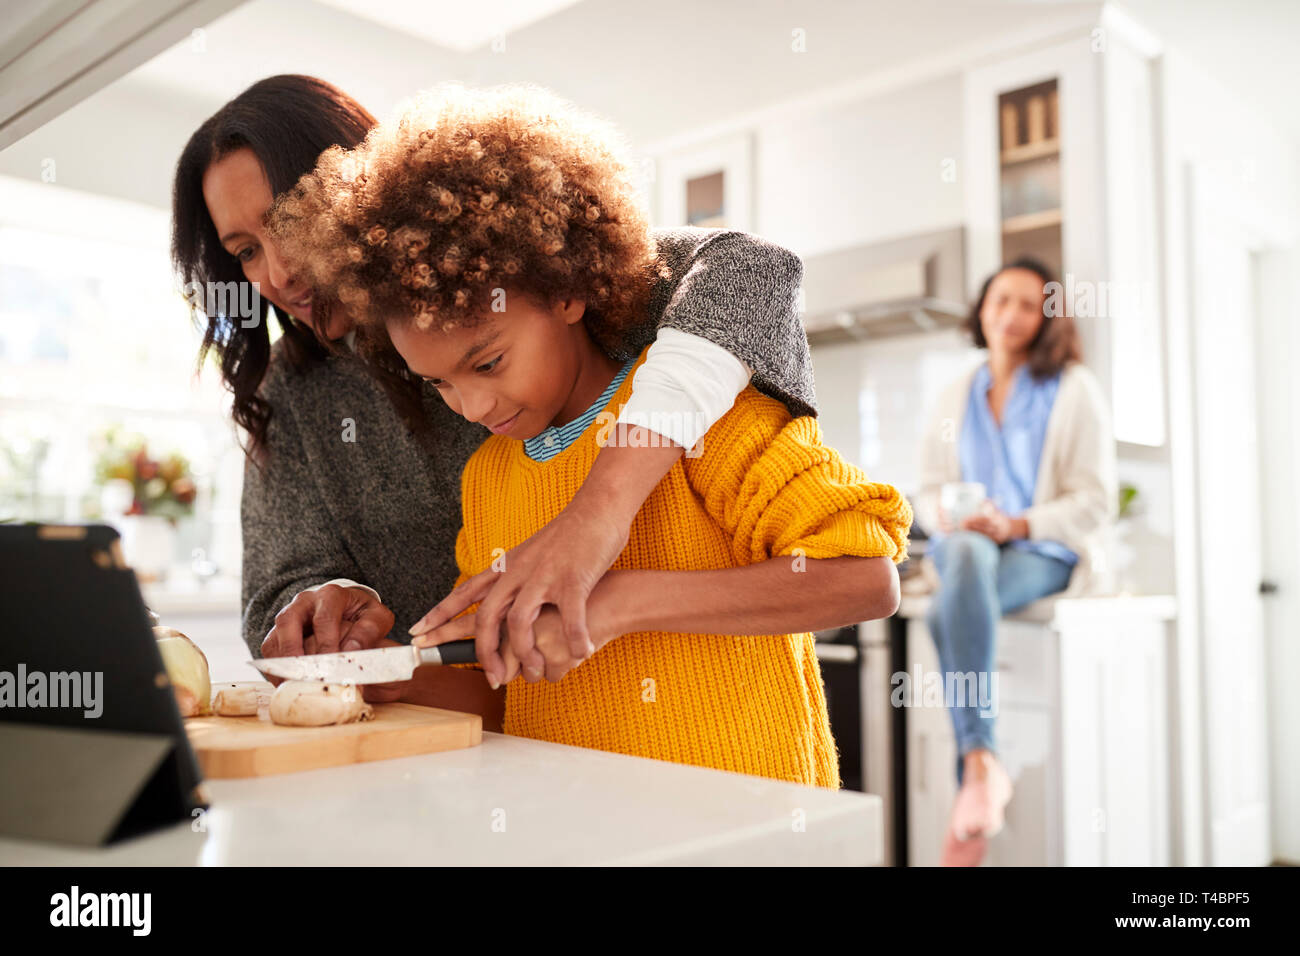 Abuela ayudando a su nieta a preparar la comida en la cocina, la Madre sentada en el fondo, se enfocan en primer plano Foto de stock